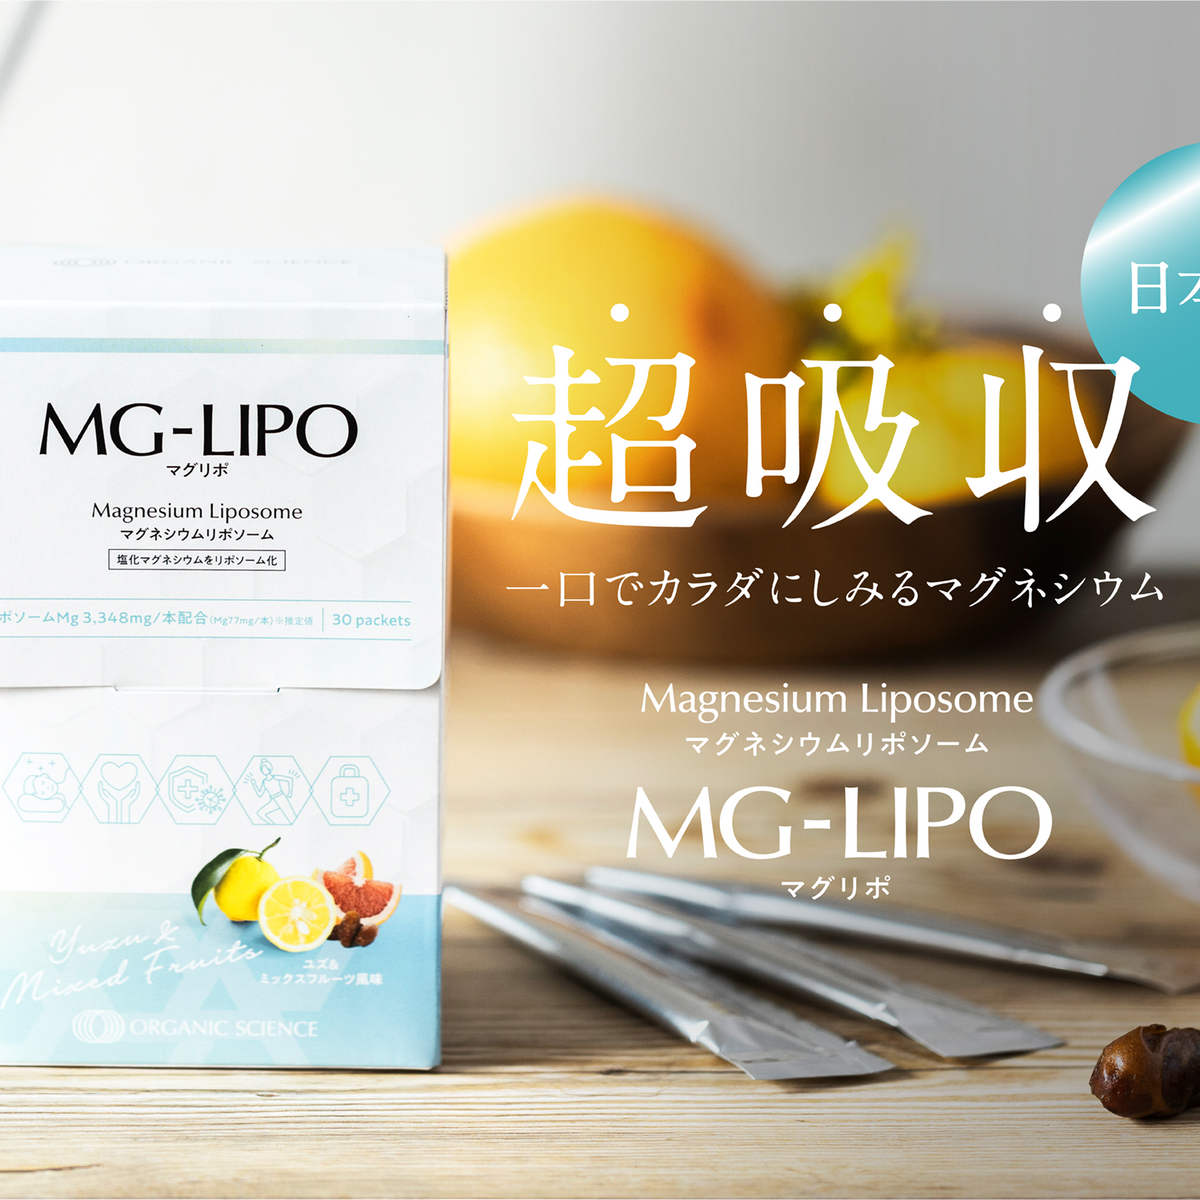 ☆二箱】マグリポ Mag-Lipo 1箱 (30包) 【複数割有り】300g - その他